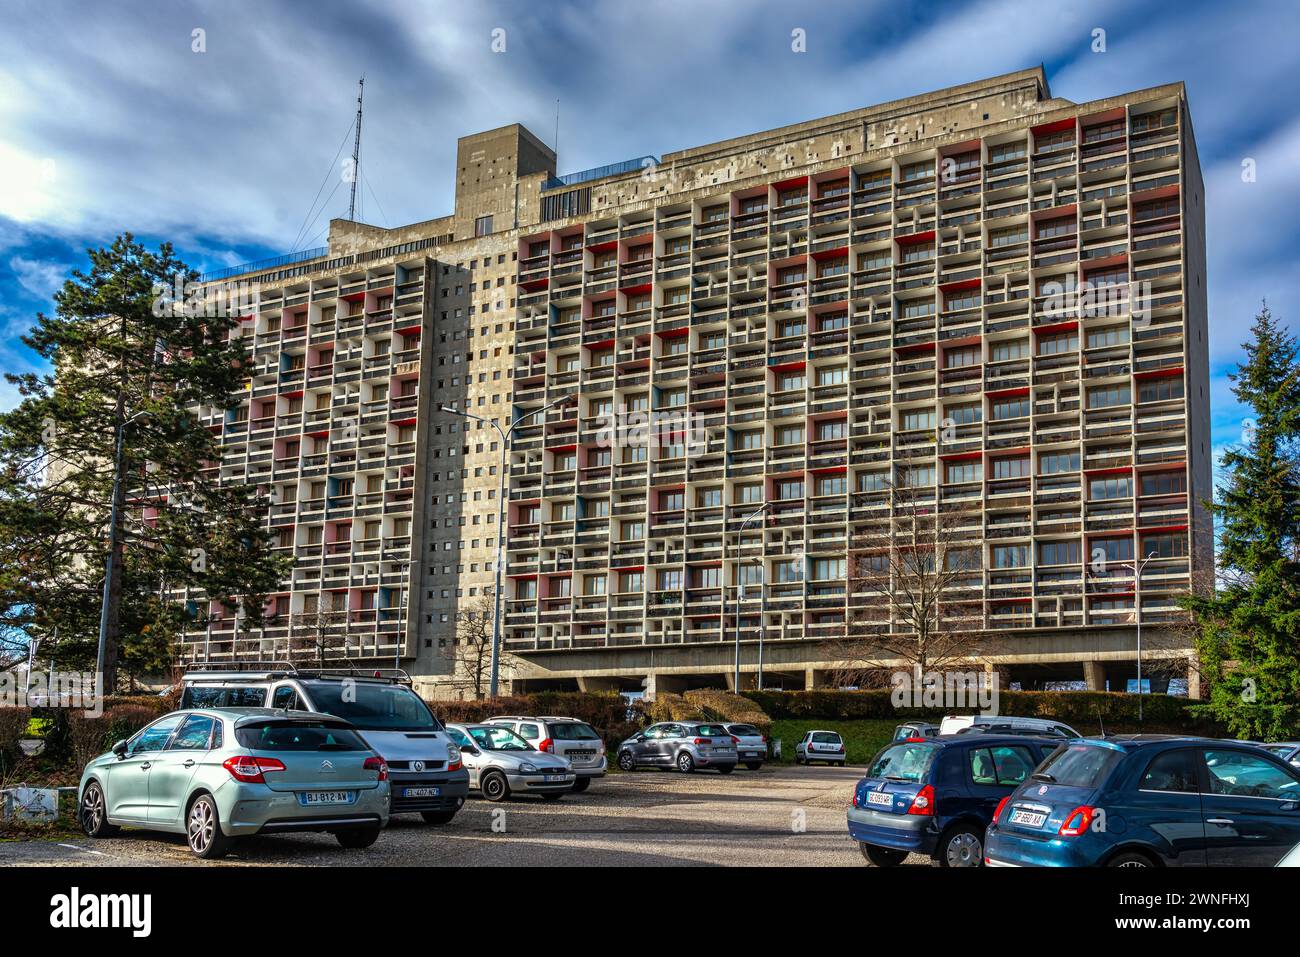 L'unité d'habitation de Firminy-Vert, également connue sous le nom de Cité radieuse, est un bâtiment conçu par l'architecte suisse le Corbusier.Firminy, France Banque D'Images